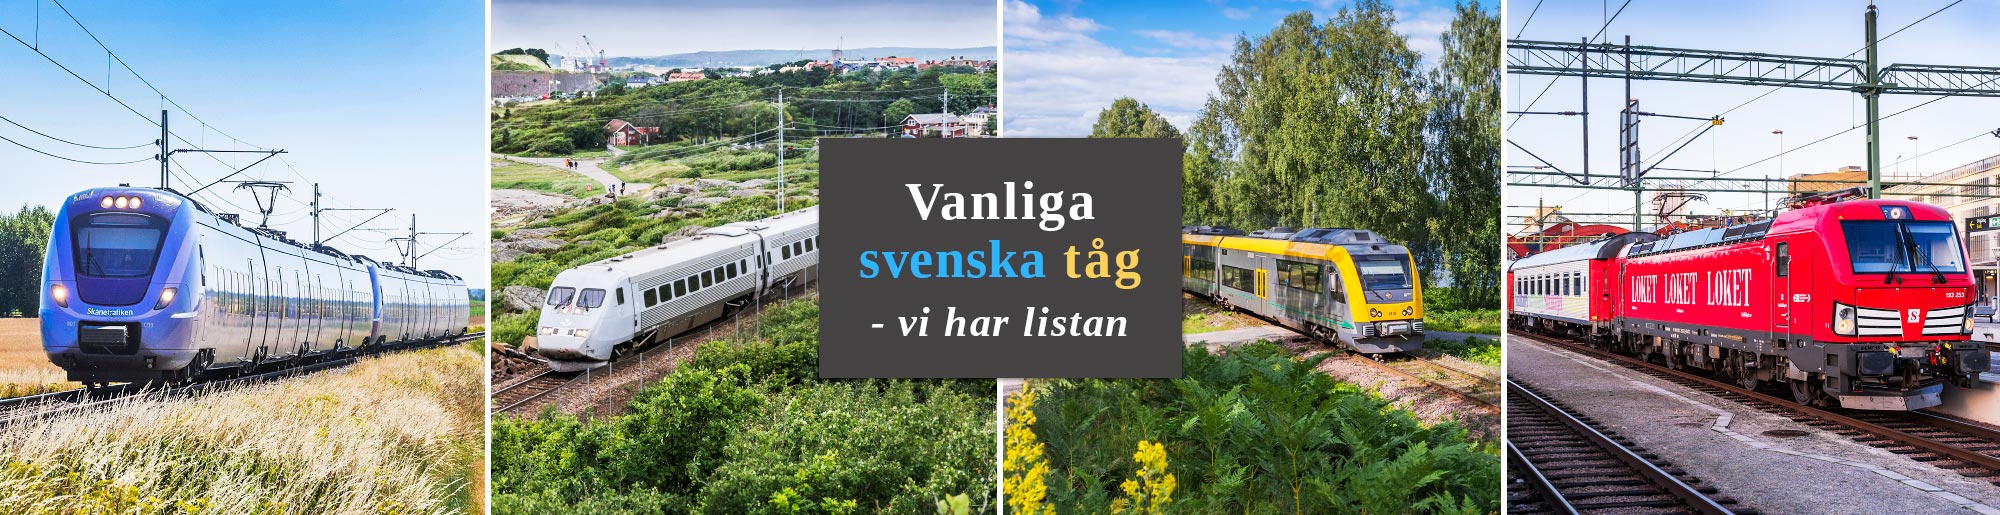 Tåg i Sverige